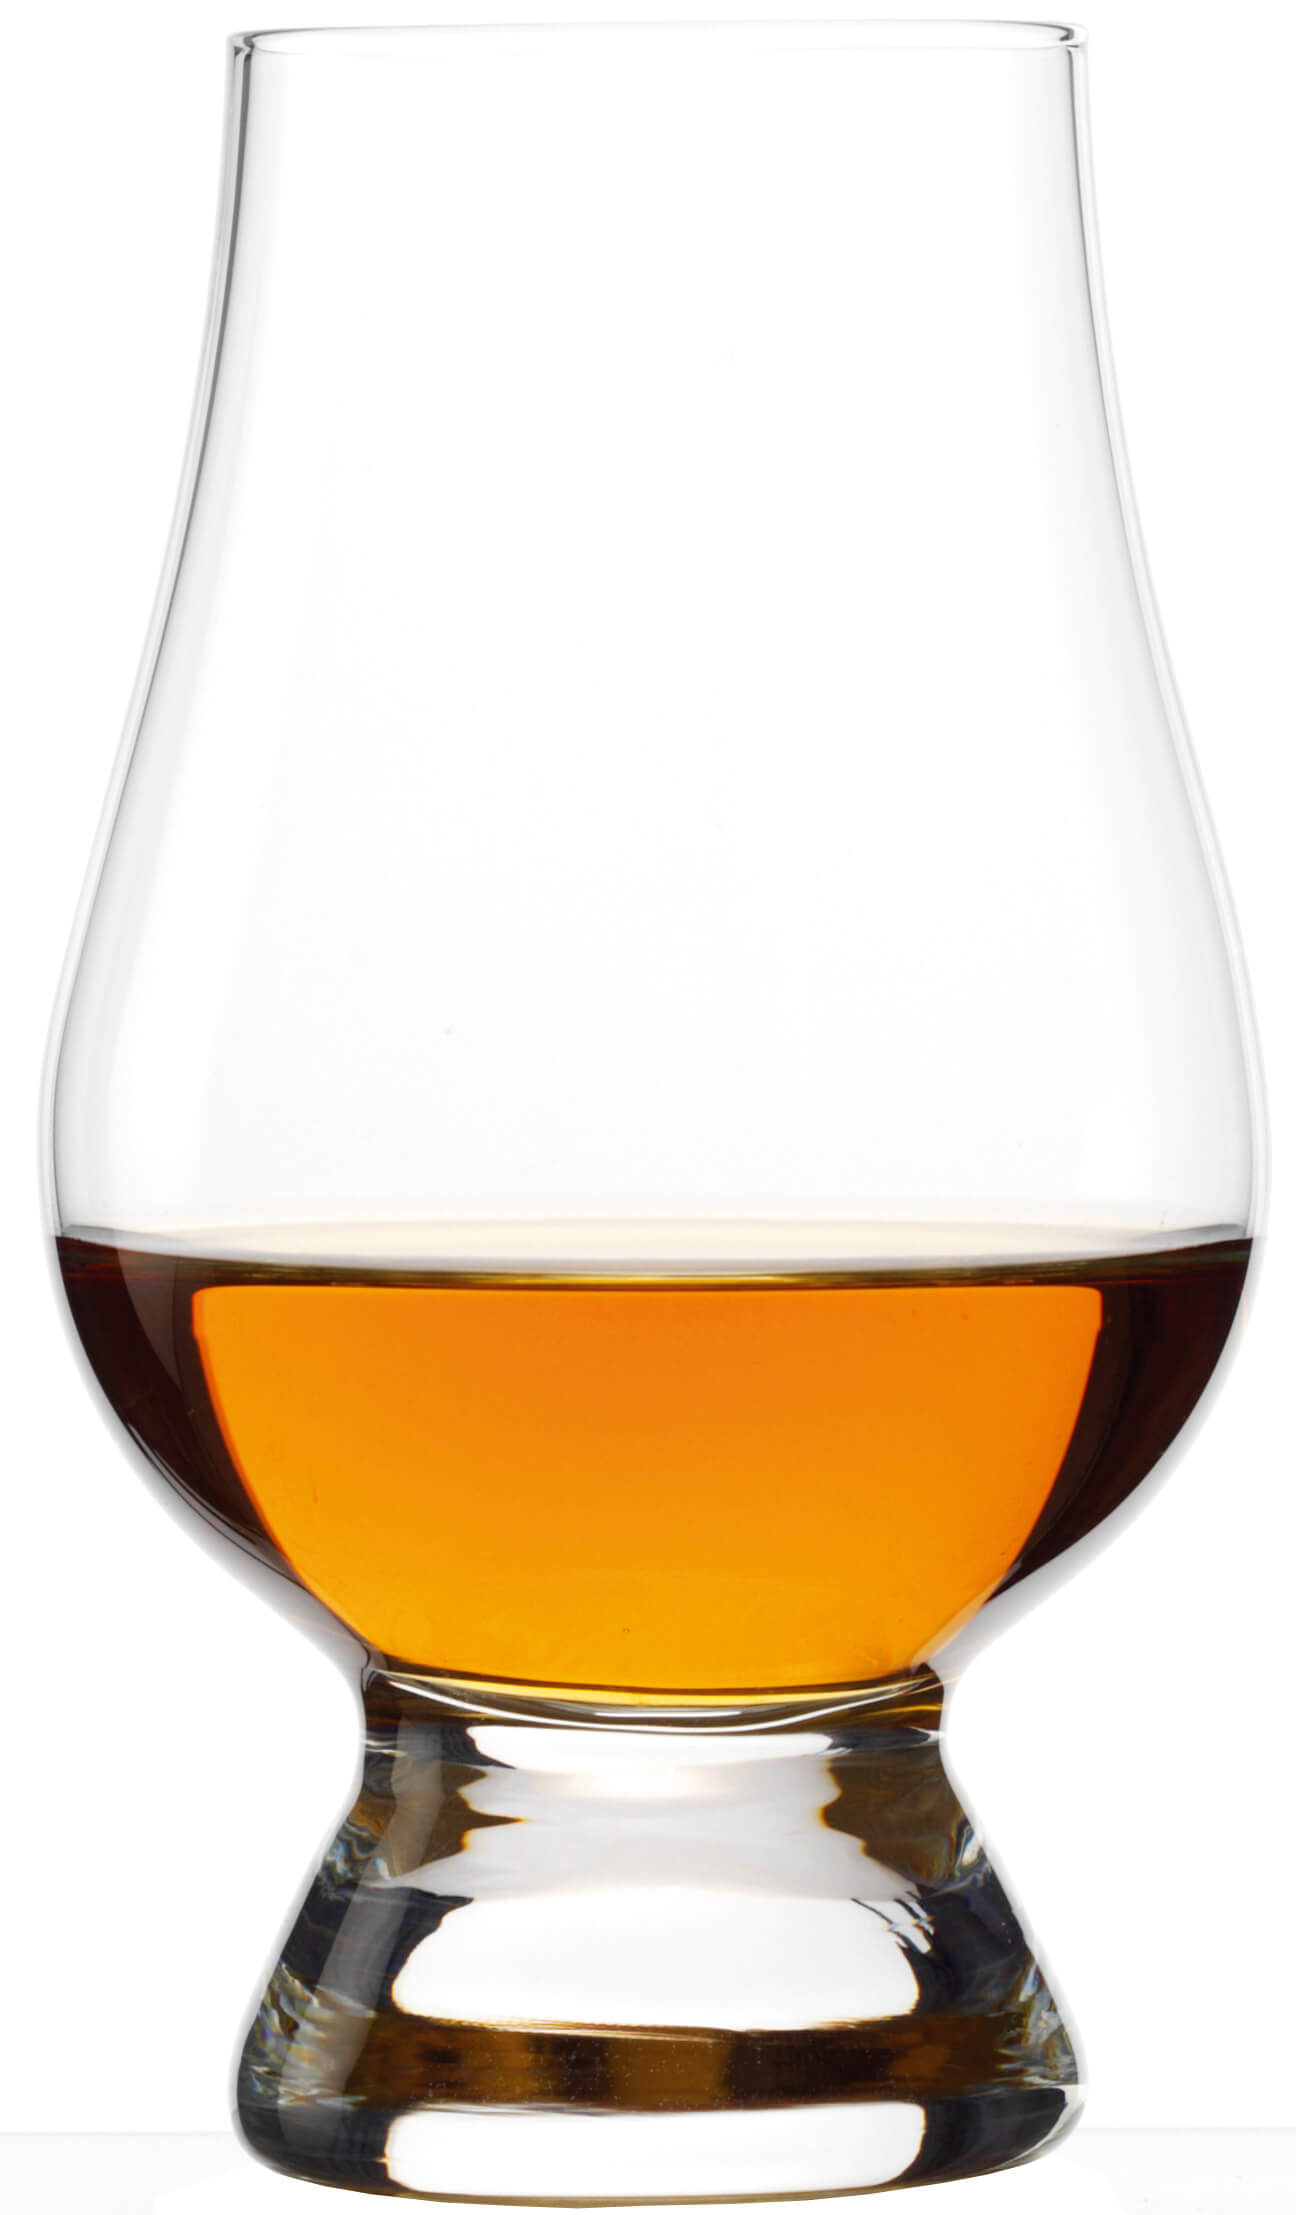 The Glencairn Whisky Tasting Set mit drei Gläsern